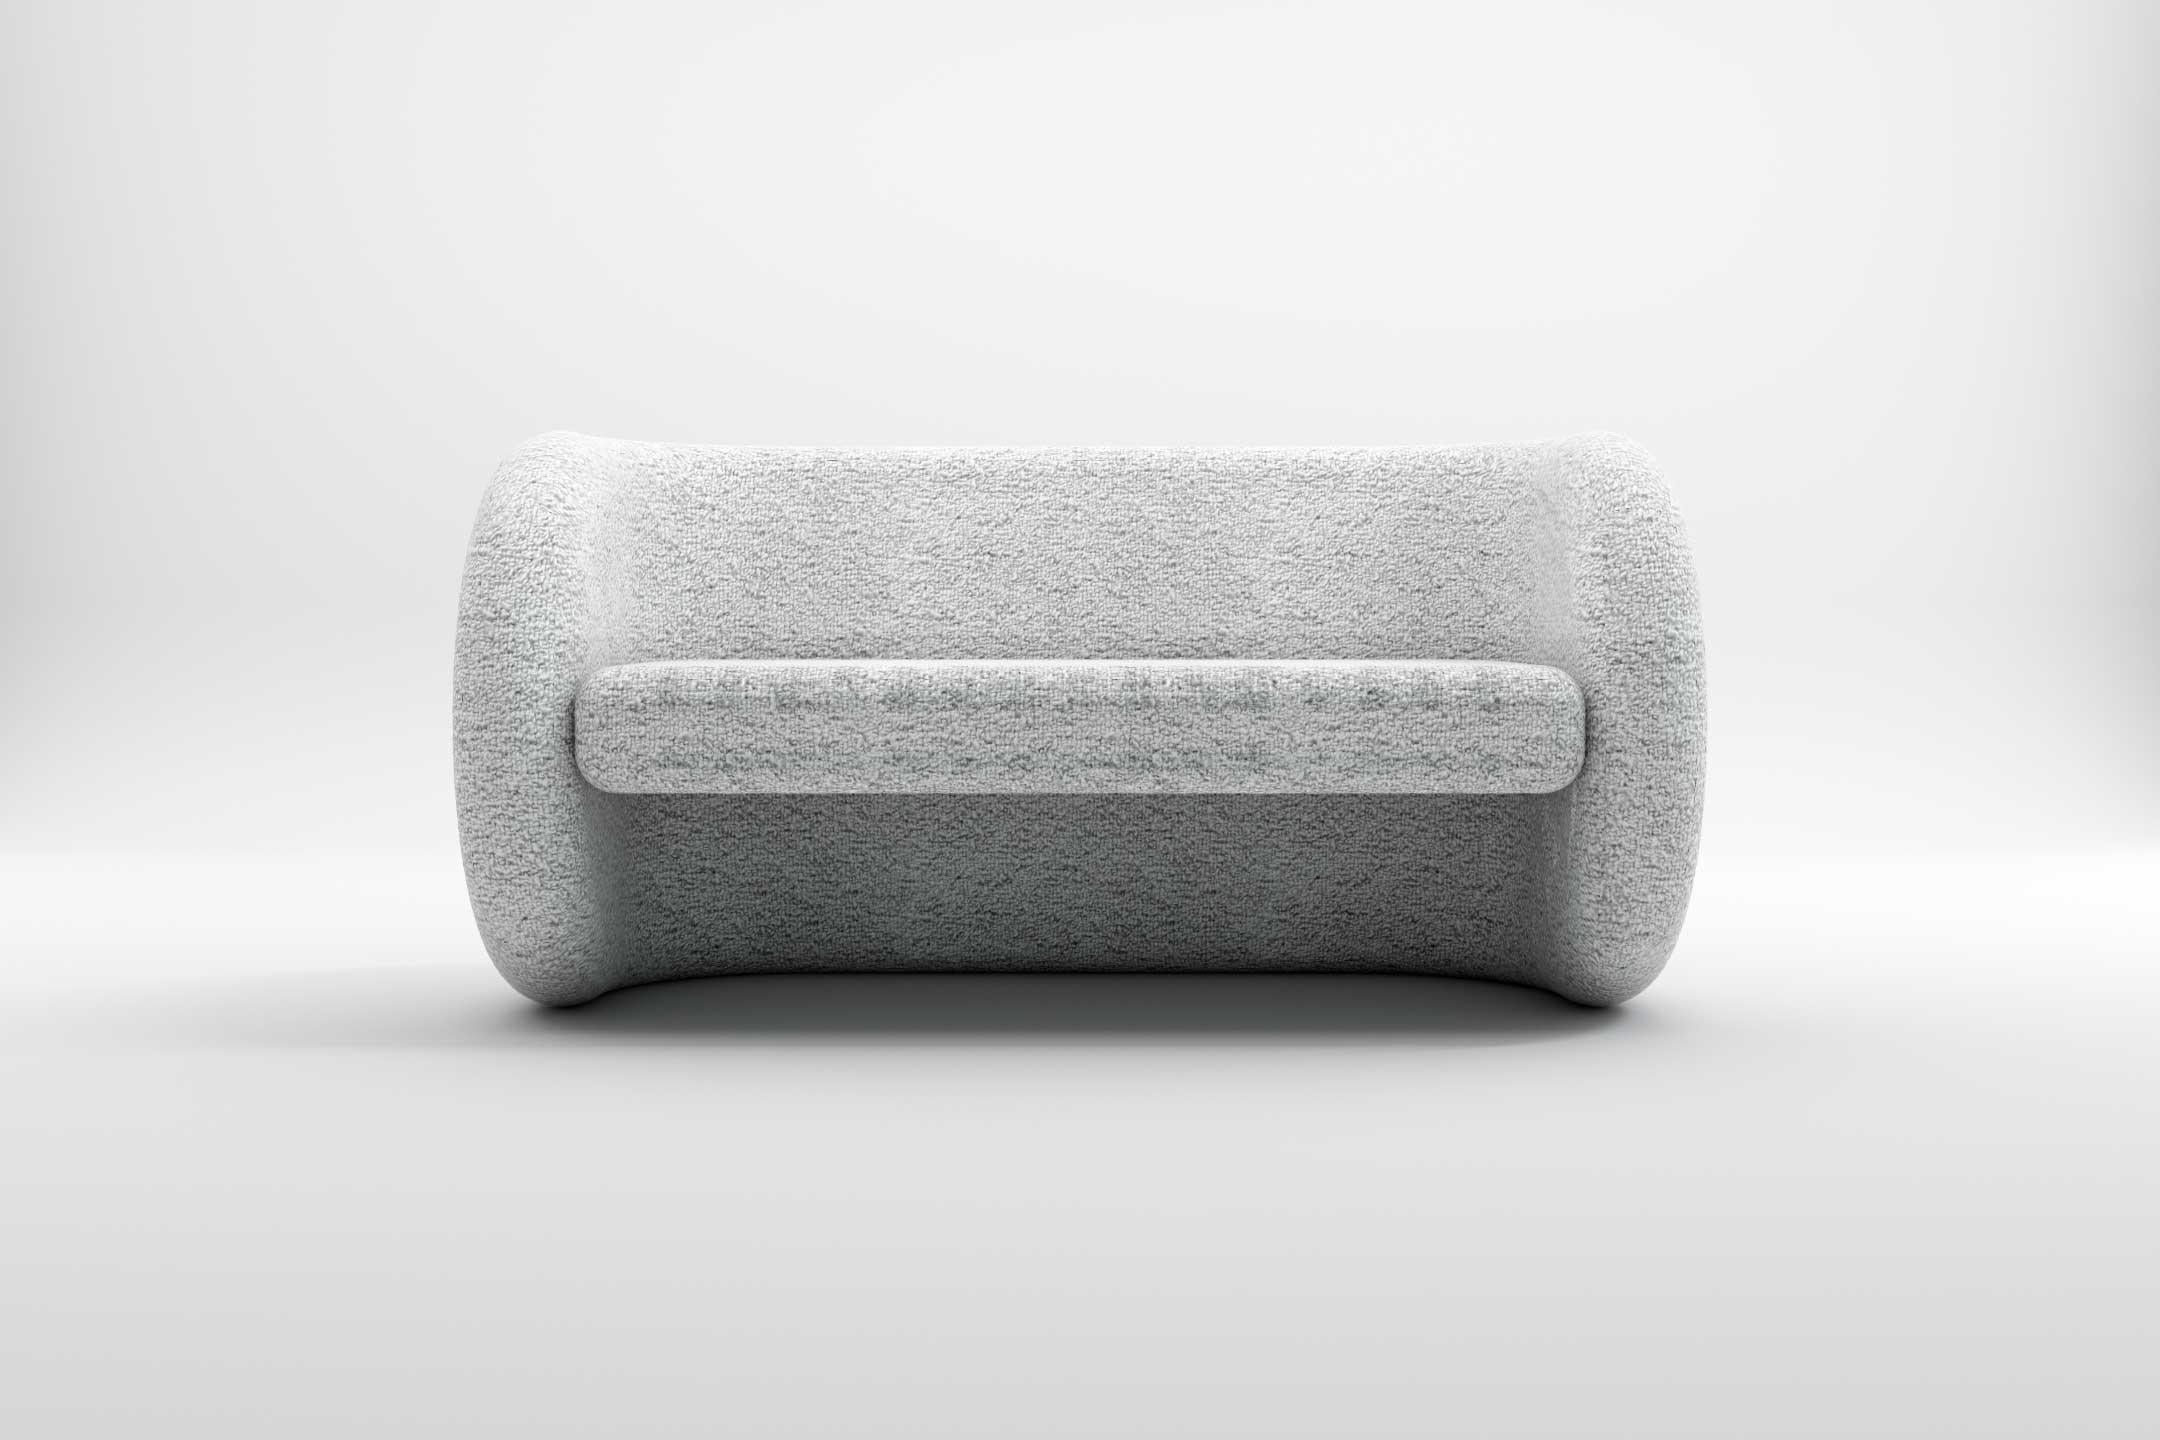 European Zen Sofa - Modern White Art Deco Two Seat Sofa For Sale